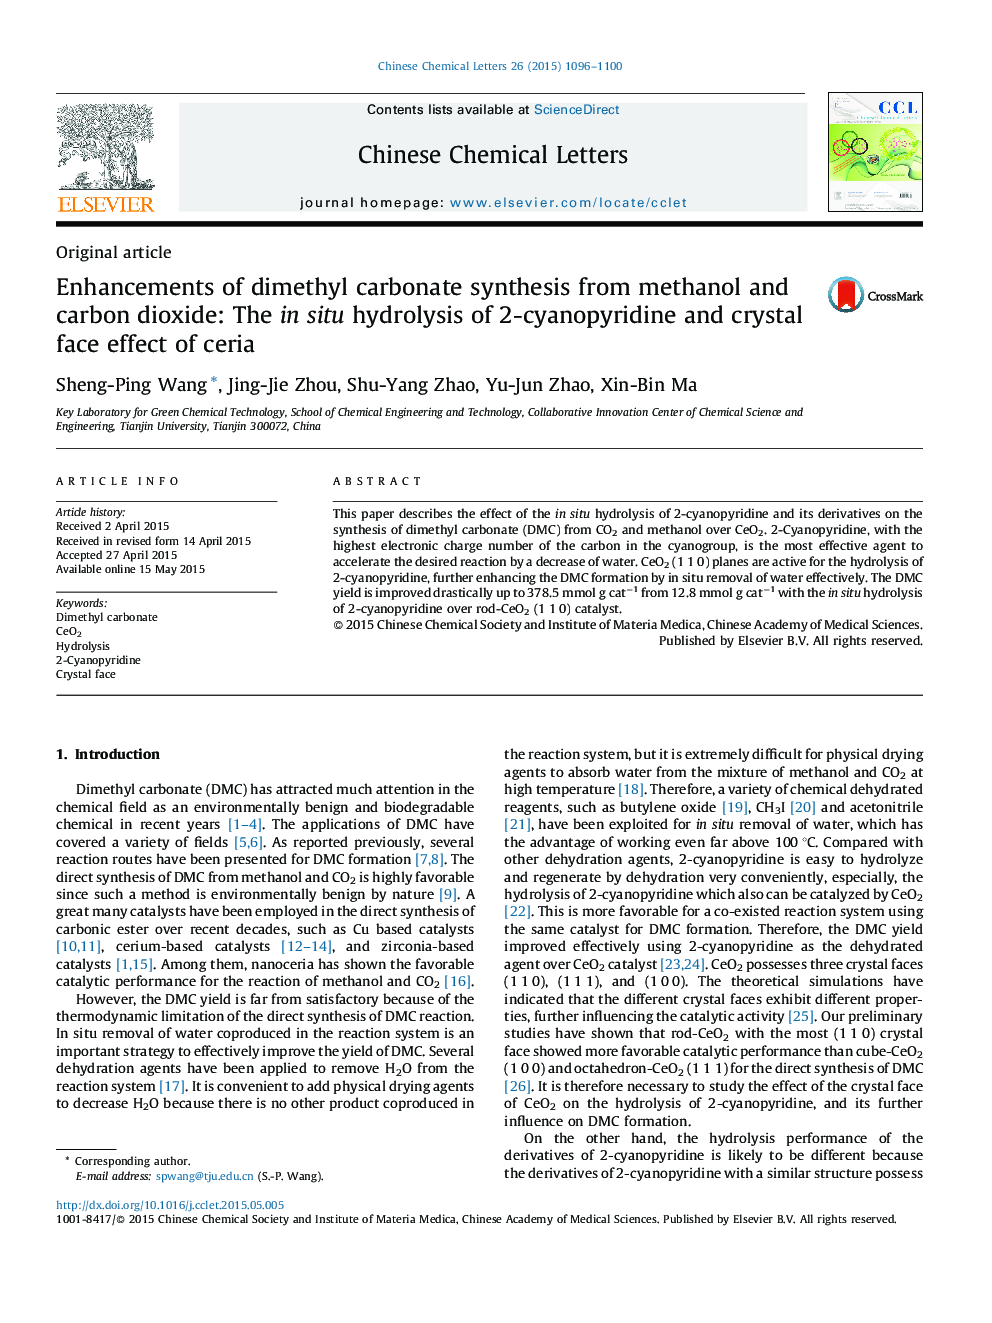 پیشرفت سنتز دی متیل کربنات از متانول و دی اکسید کربن: هیدرولیز در محل 2-سیانوپیریدین و اثر کریستال سرایا 